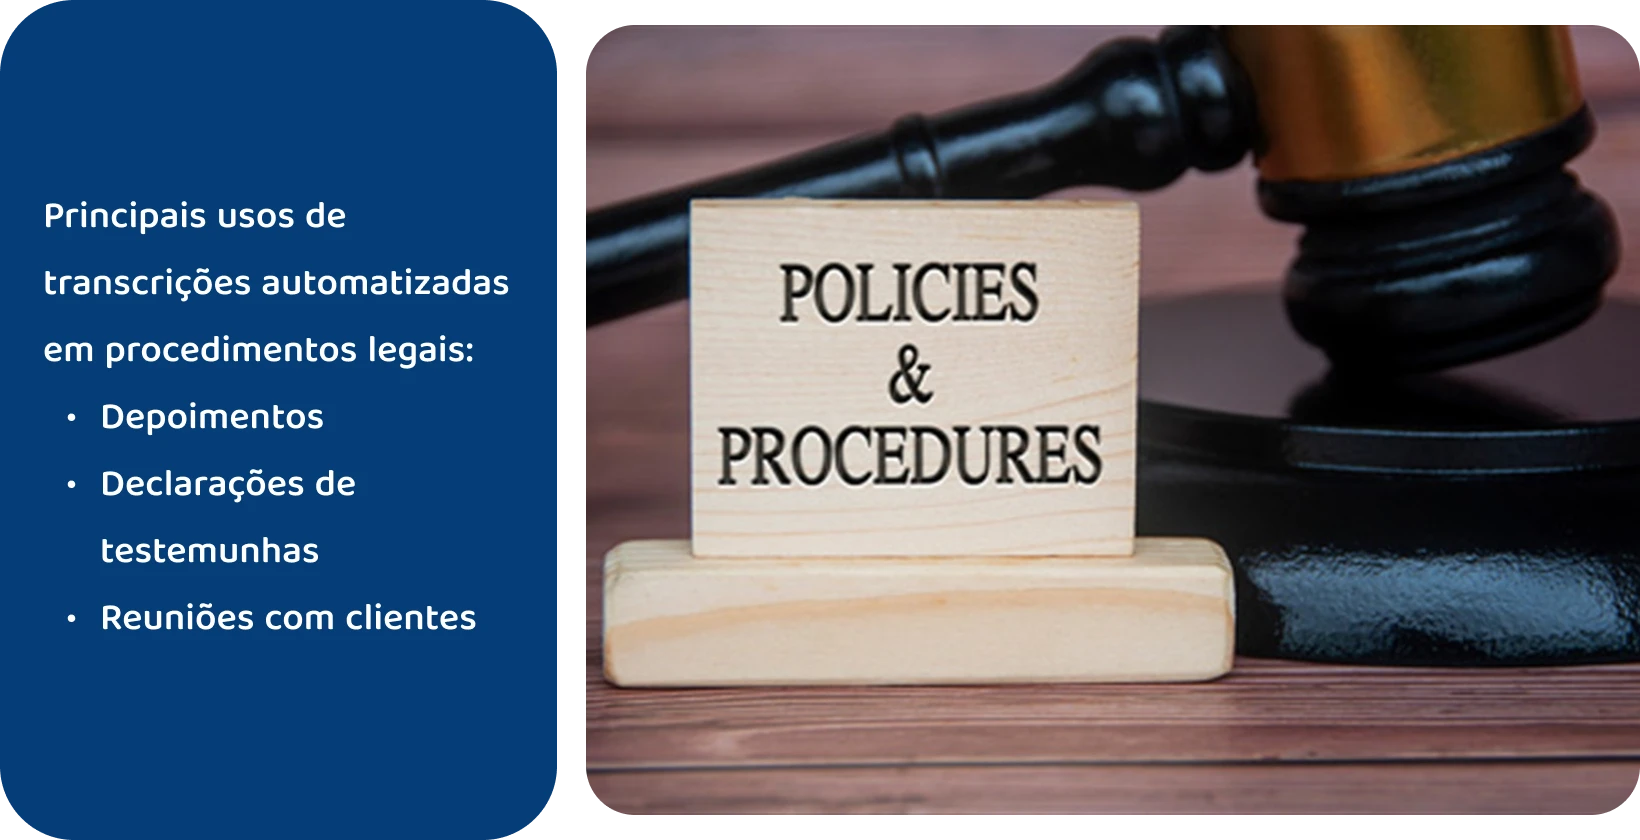 Gaiola ao lado do sinal "Políticas e Procedimentos", representando os padrões legais atendidos por ferramentas de transcrição automatizadas.